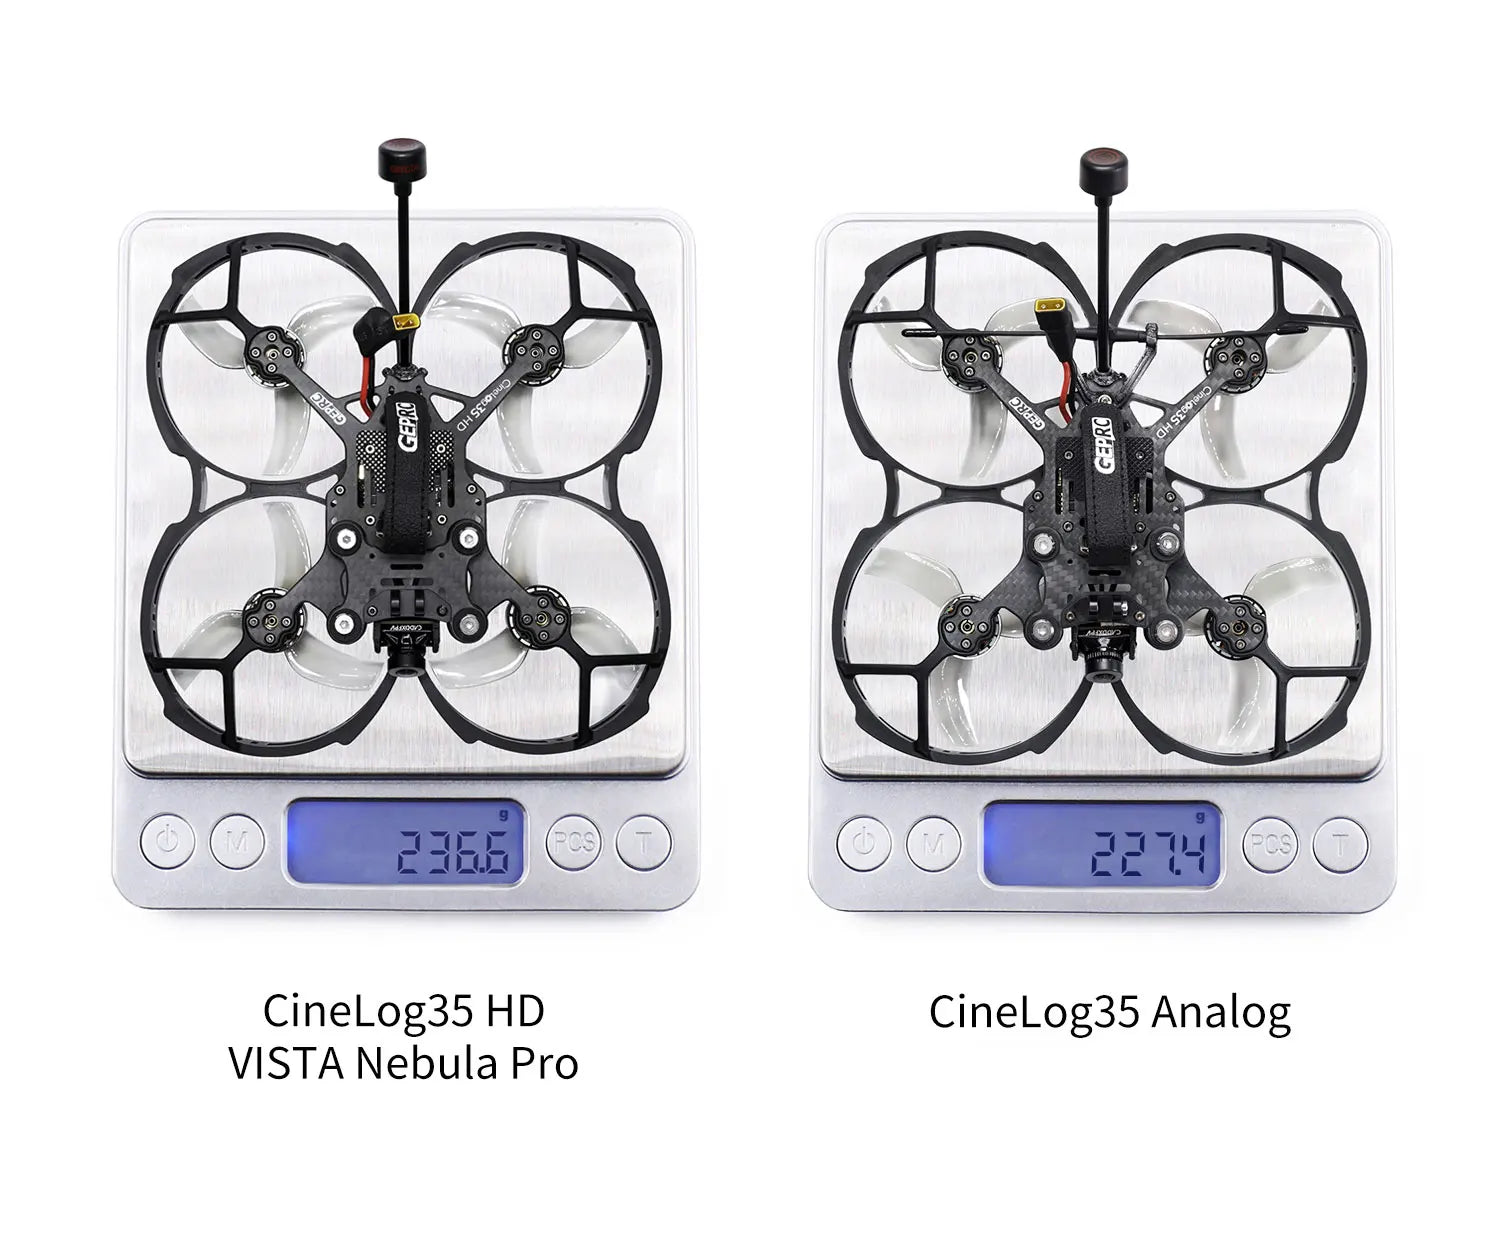 GEPRC CineLog35 FPV Drone, CineLog35 Analog VISTA Nebula Pro ohscCOR